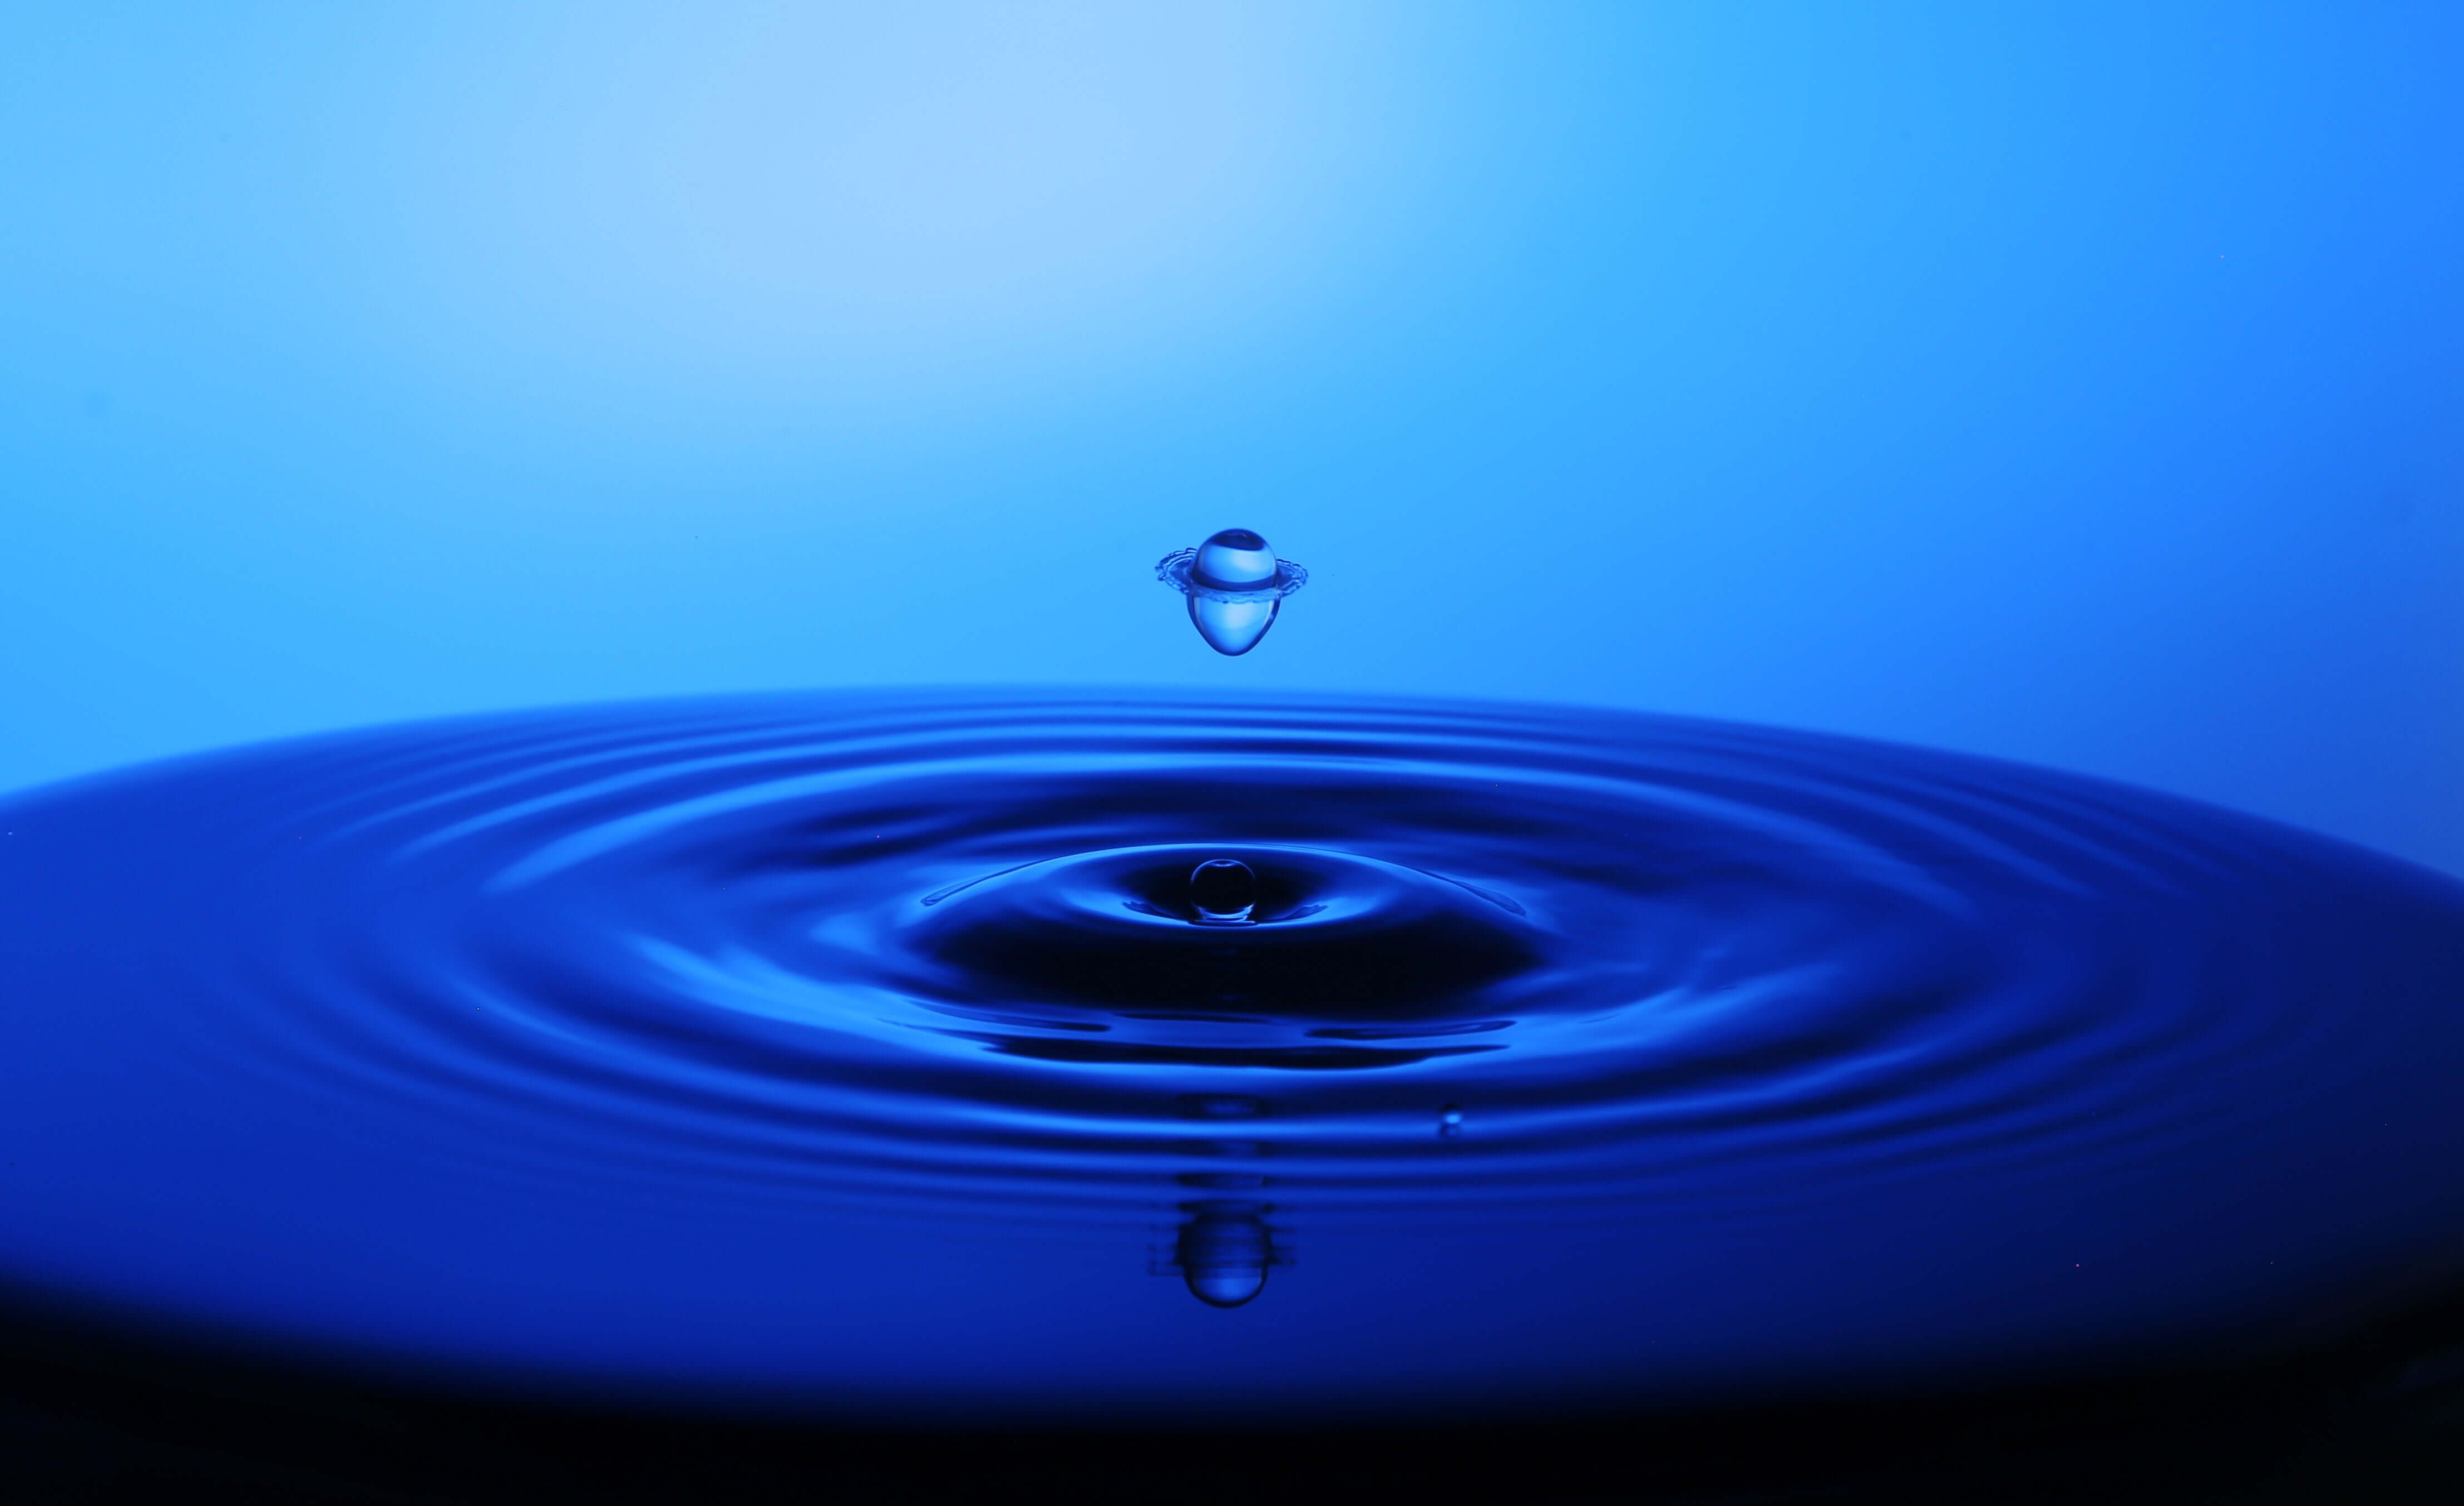 water droplet leaving ripples in blue water